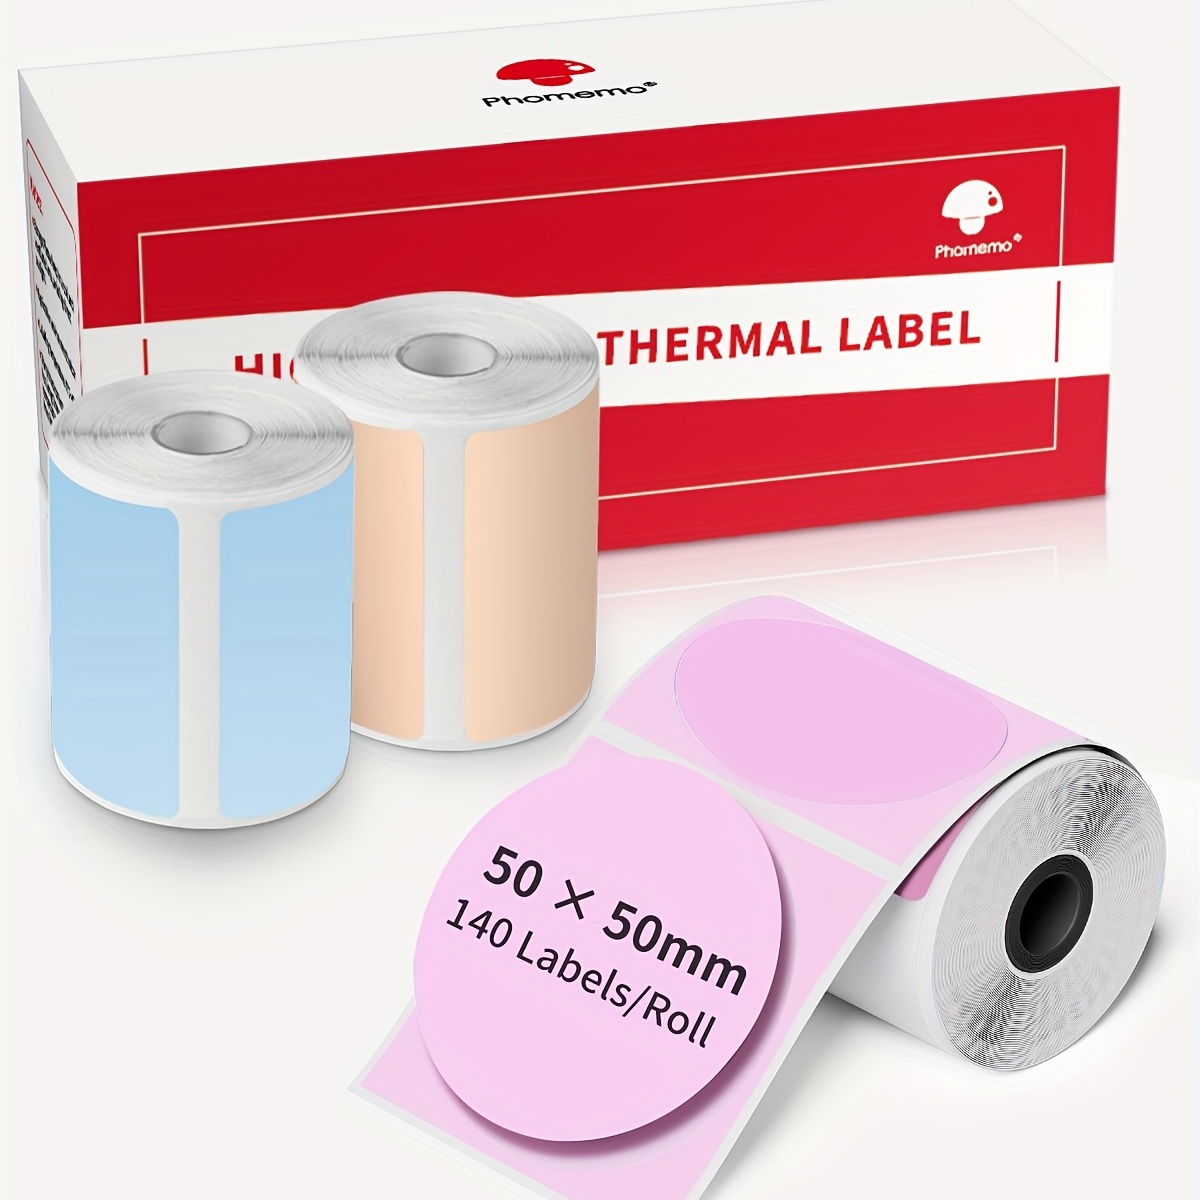 phomemo self-adhesive thermal paper printable sticker